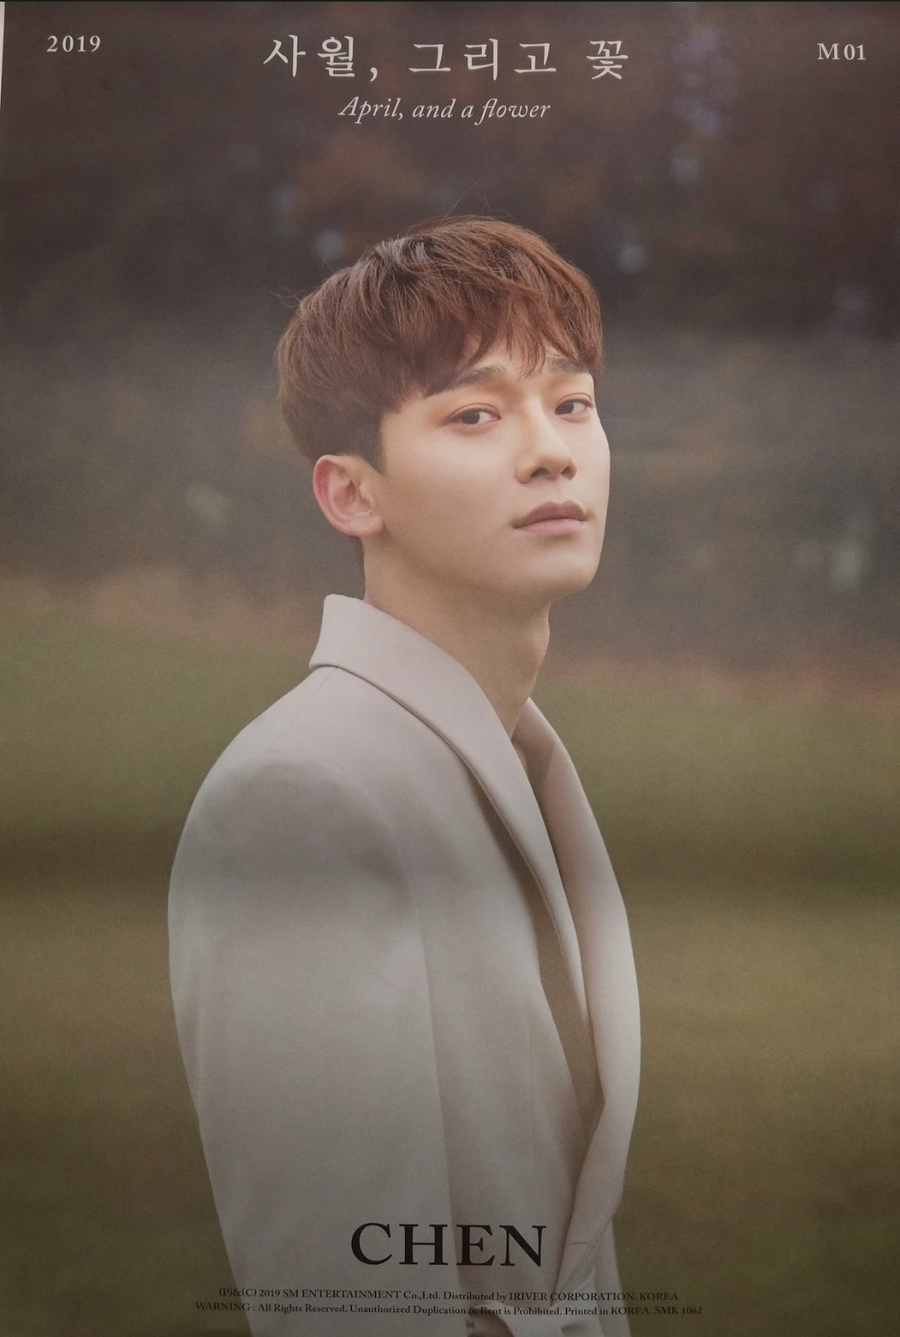 Chen 1st Mini Album April, and a Flower Official Poster - Photo Concept April